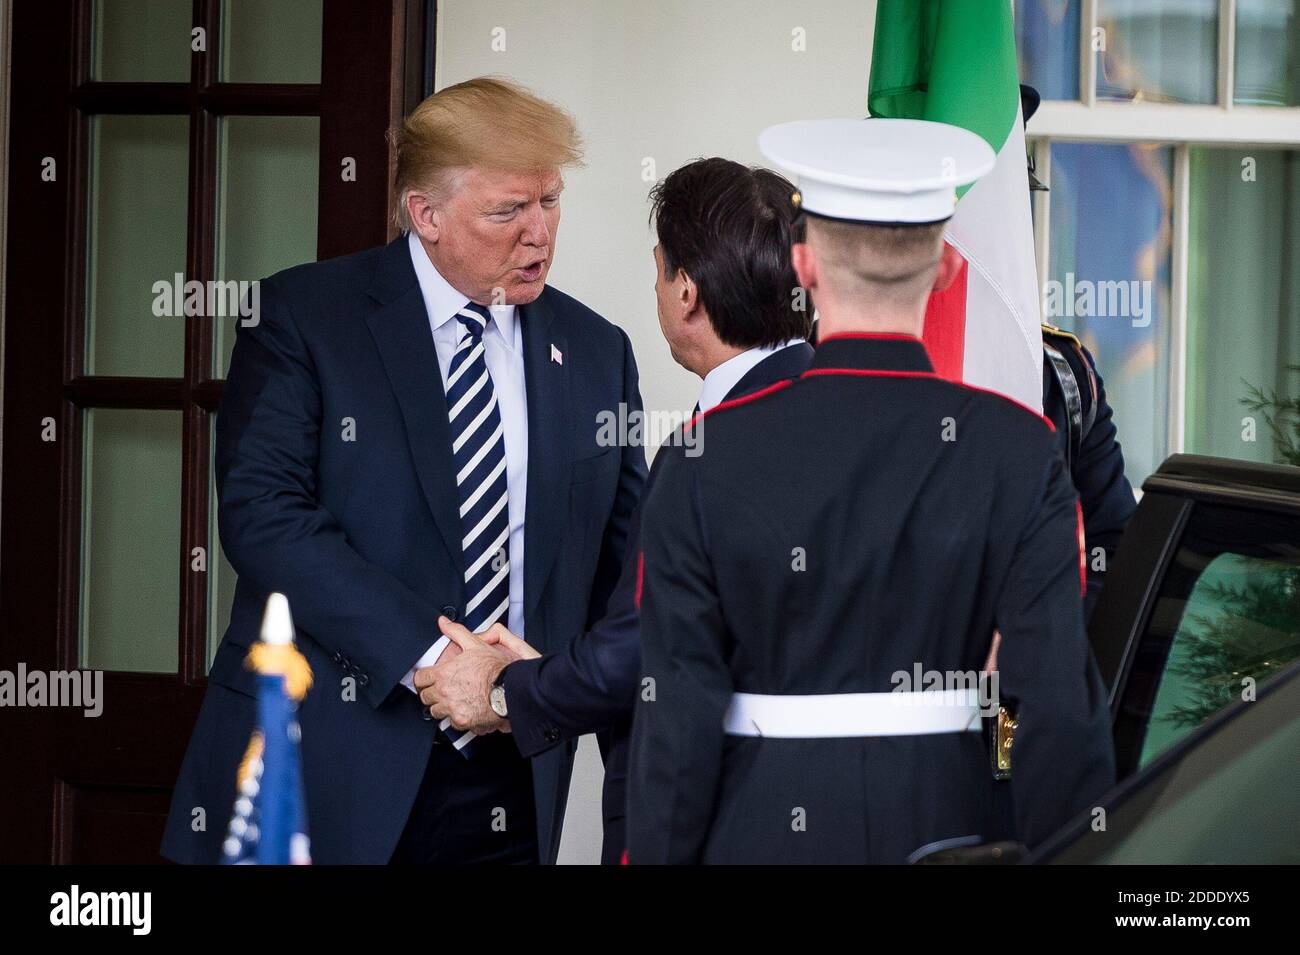 LE président AMÉRICAIN Donald Trump salue le Premier ministre italien Giuseppe Conte à la Maison Blanche le 30 juillet 2018 à Washington, D.C. photo de Pete Marovich/ABACAUSA.com Banque D'Images